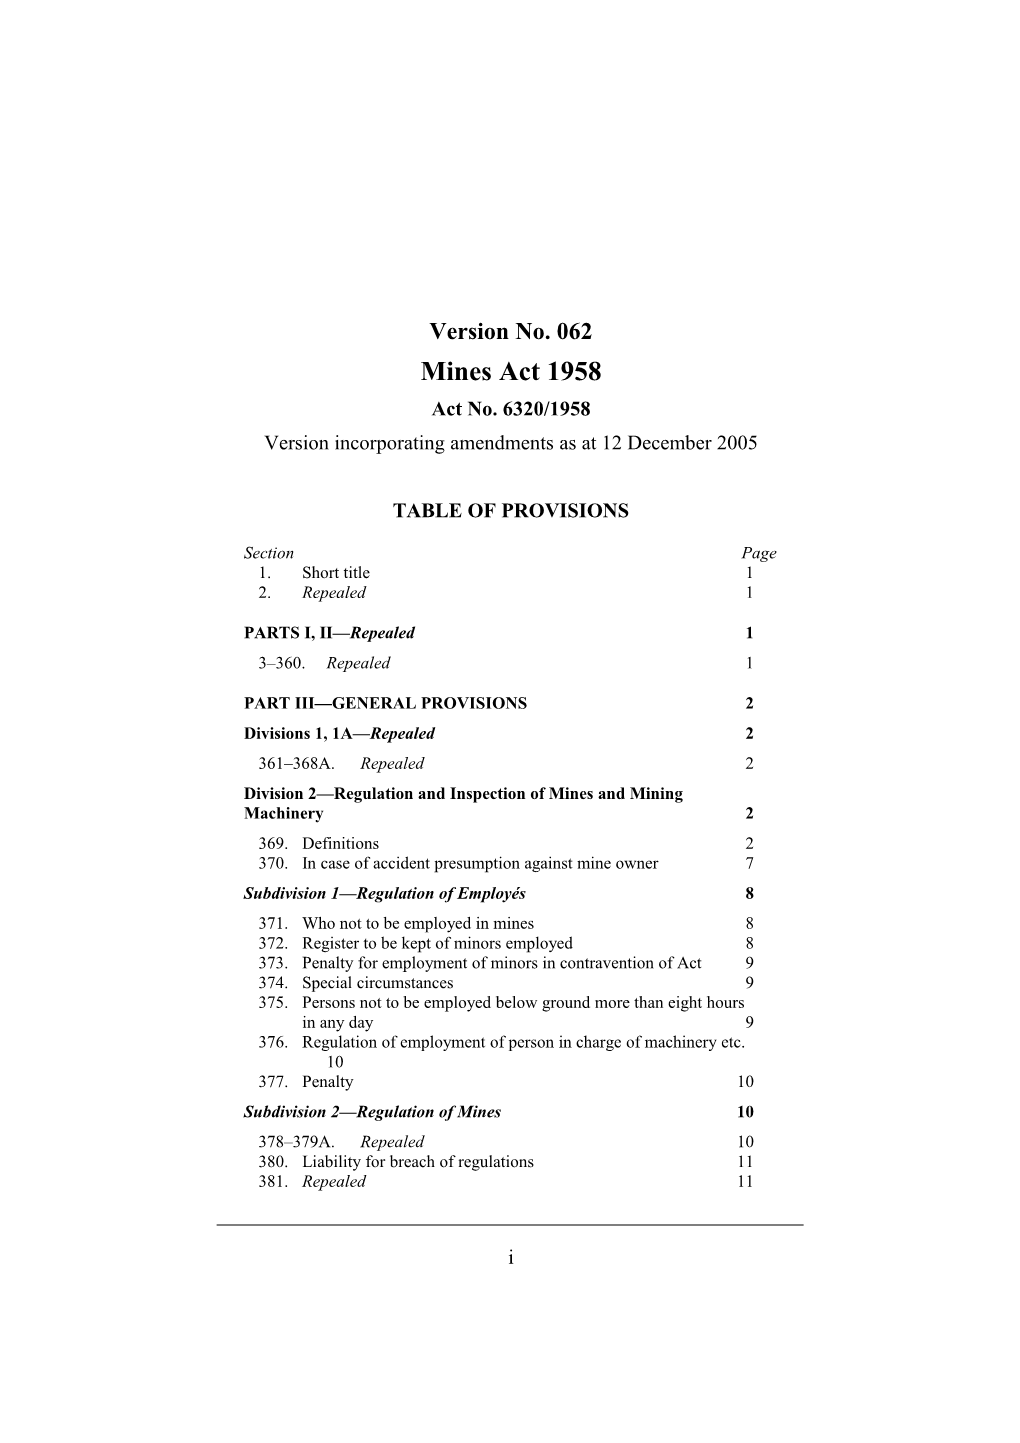 Version Incorporating Amendments As at 12 December 2005